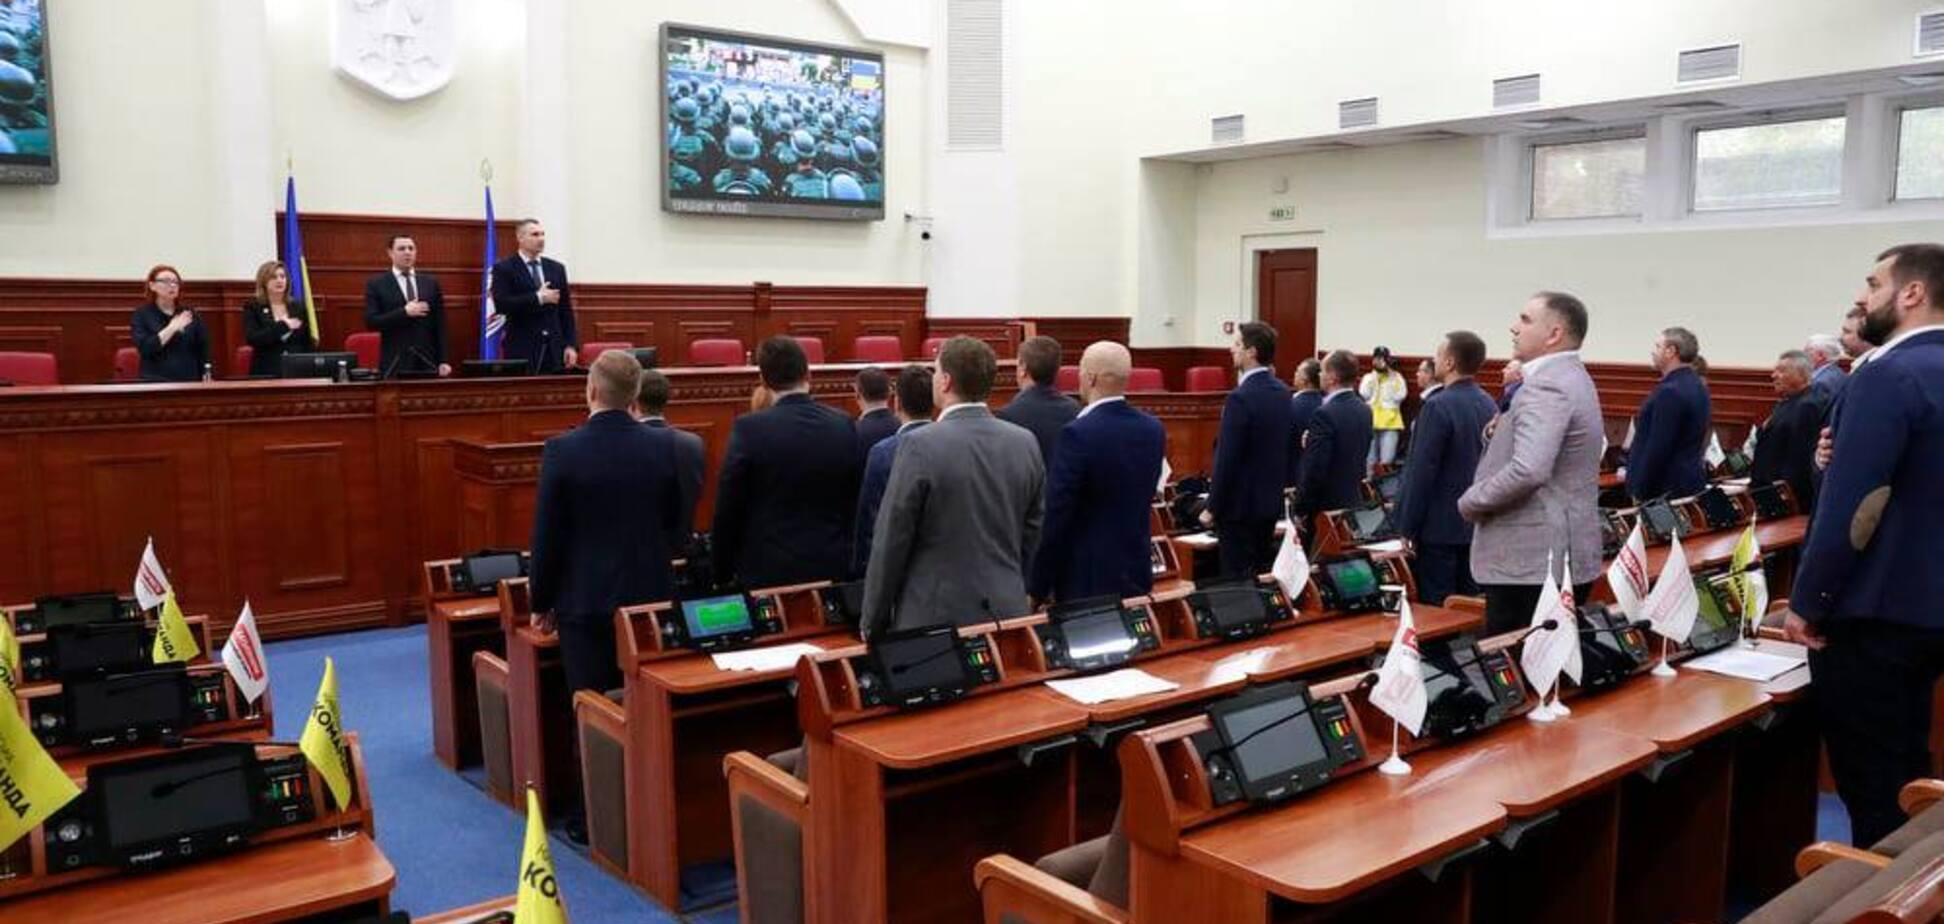 Киеврада собралась впервые с мая: во фракциях произошли серьезные изменения